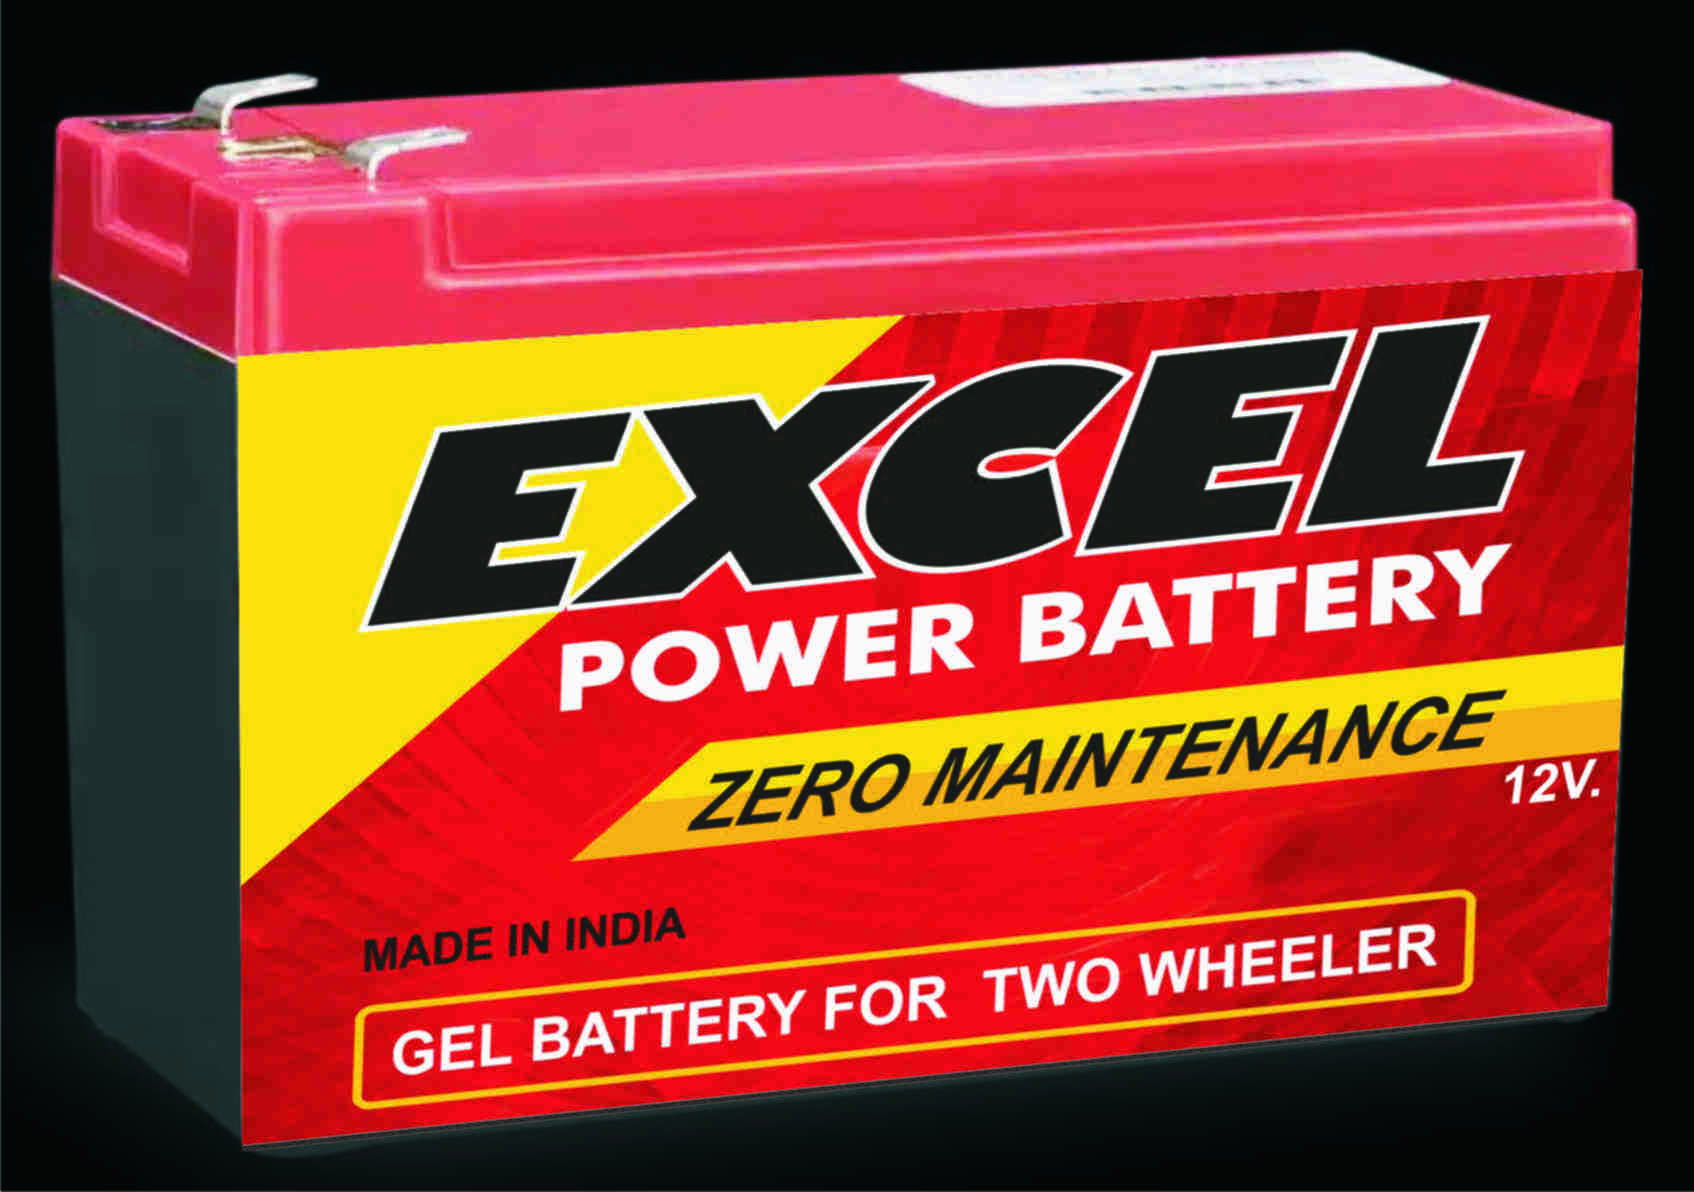 7-12 V Emergency Light Battery